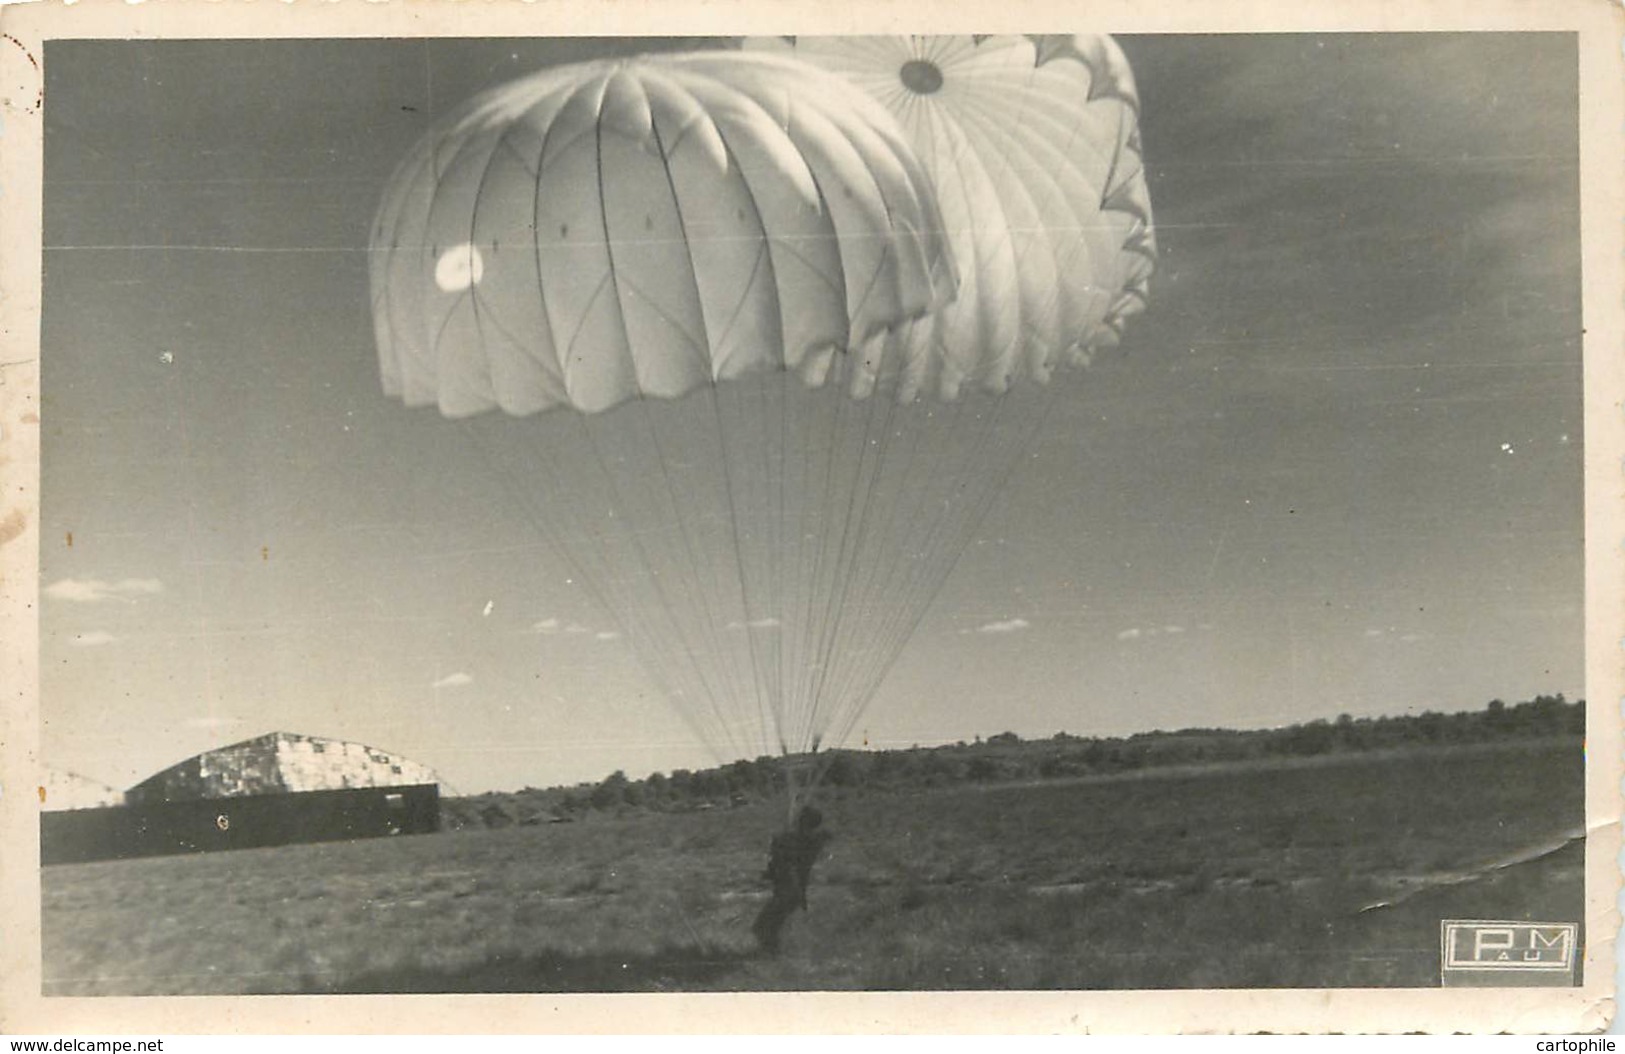 MILITARIA PARACHUTISME - Lot De 2 Photos D'un Saut En Parachute Aux Alentours De PAU Années 1940 - Parachutting